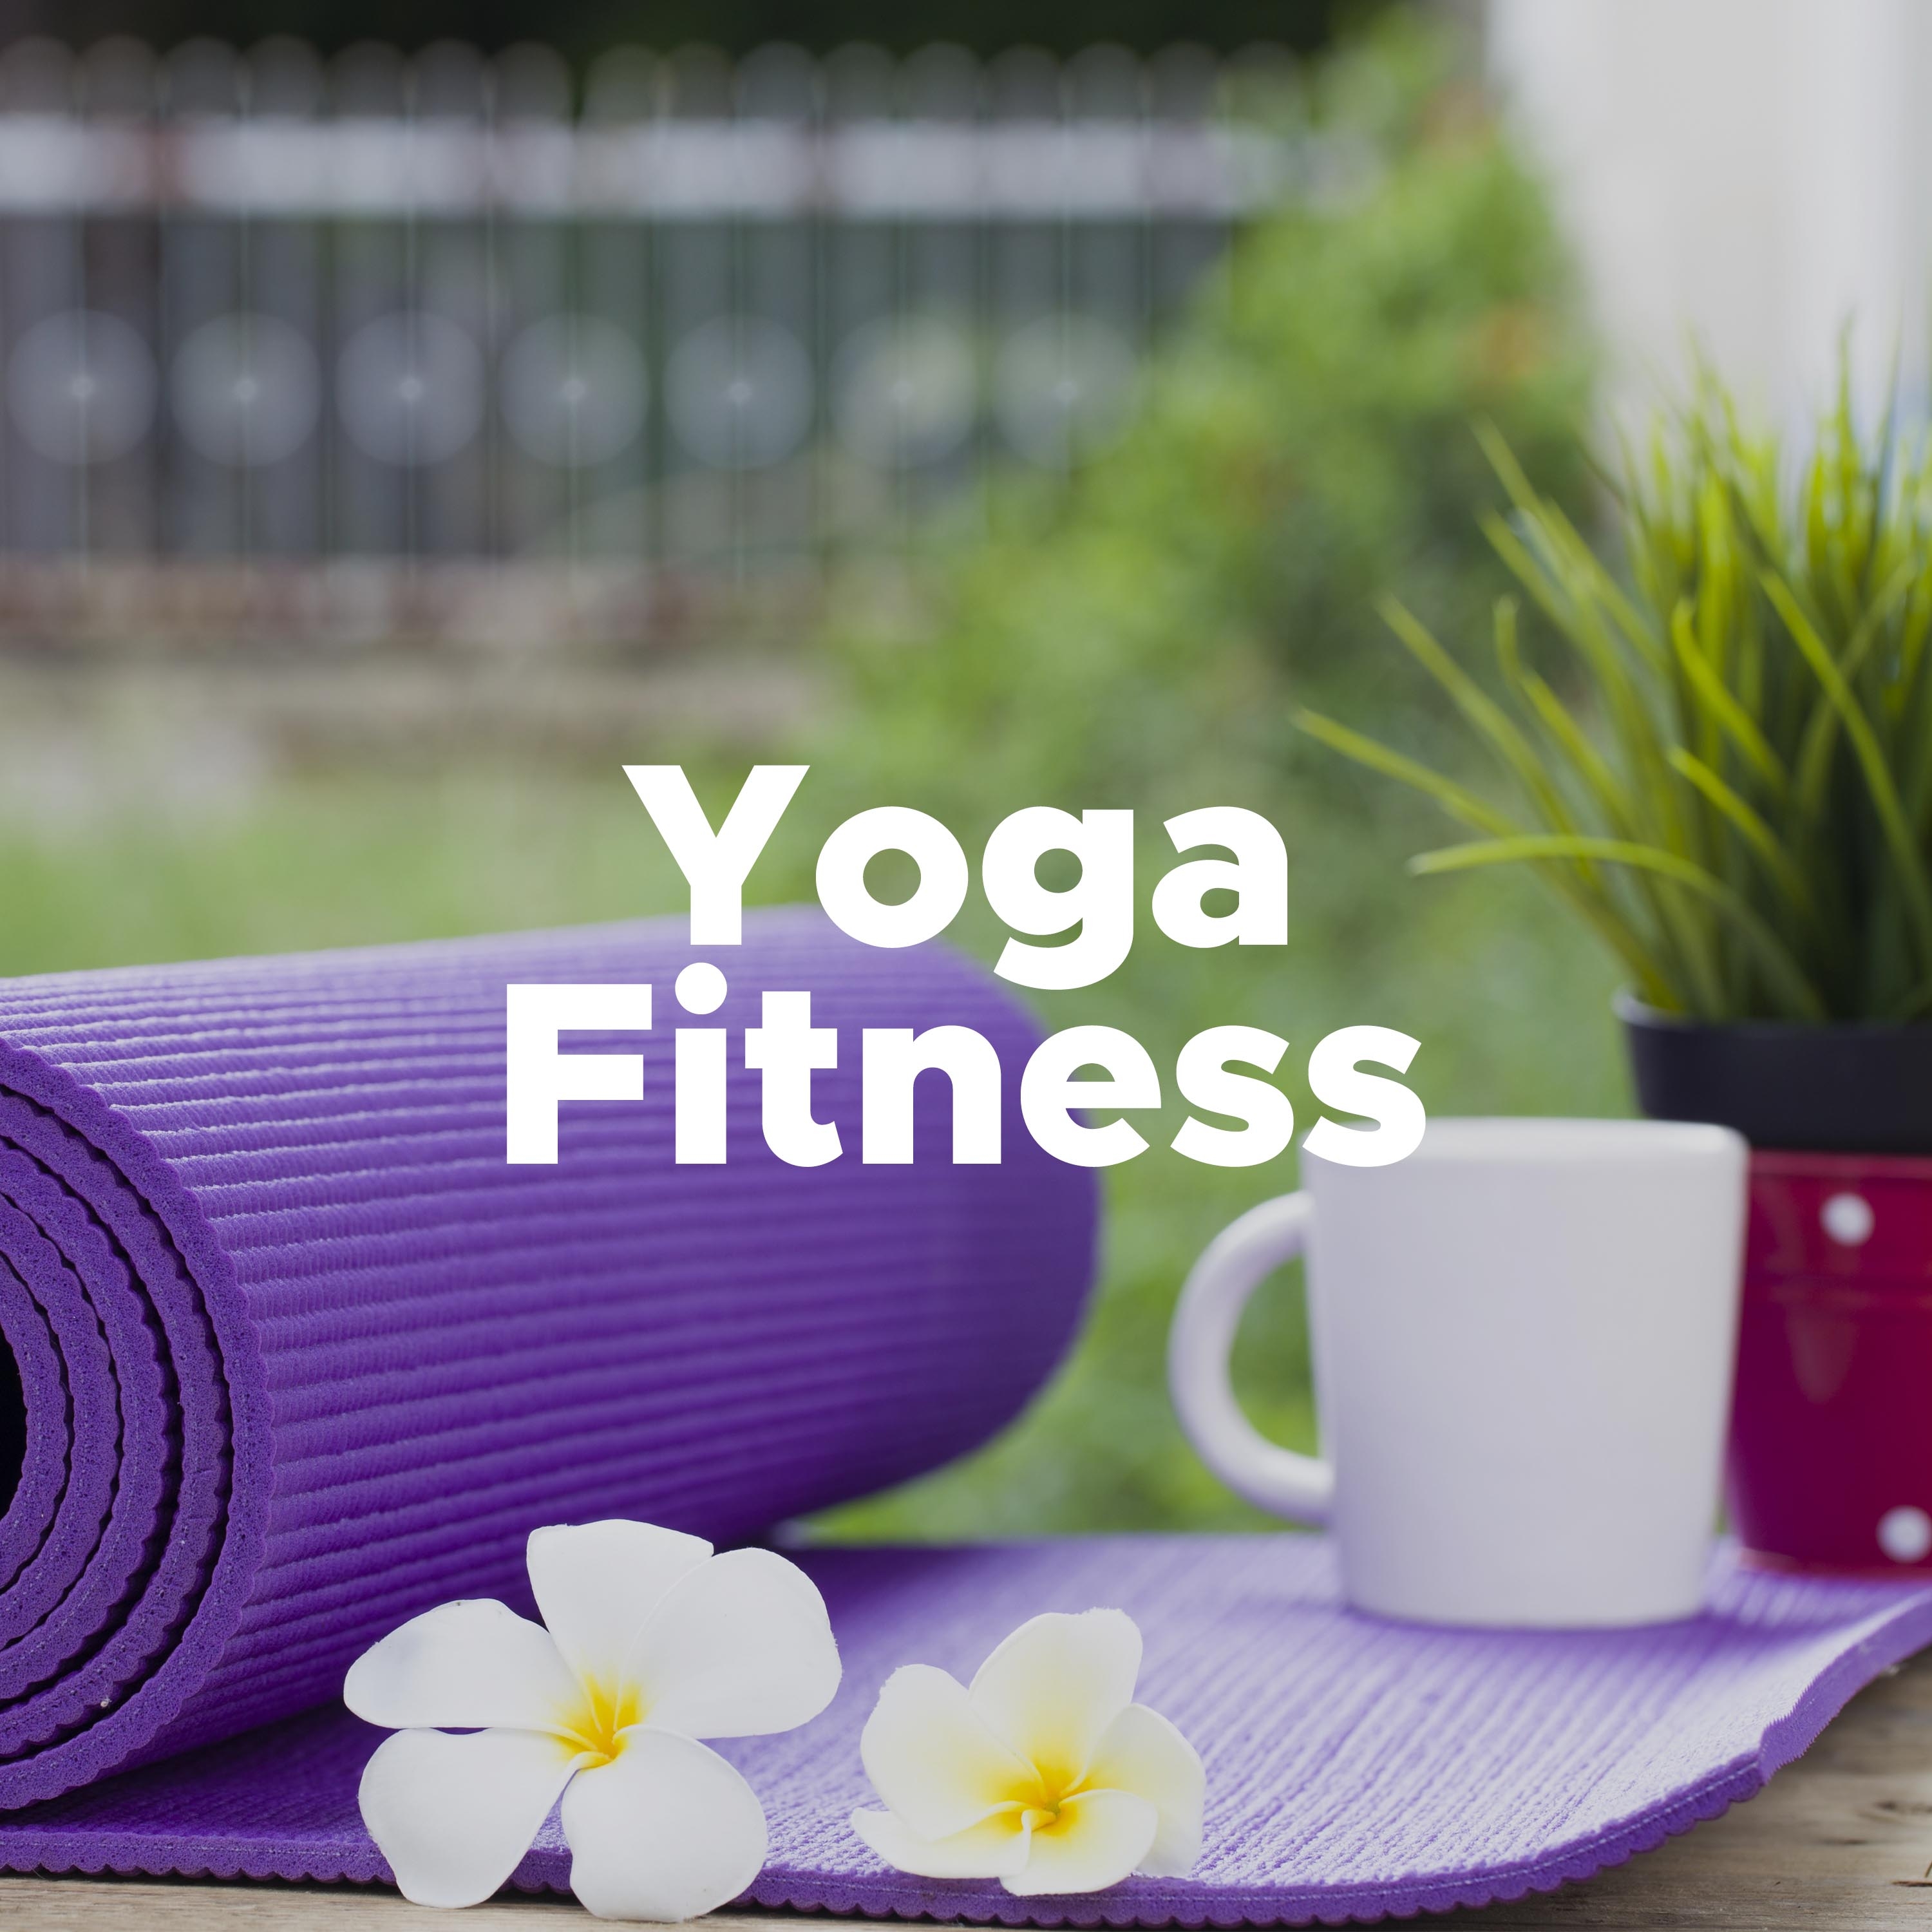 Yoga Fitness - Musica Asiatica Strumentale per Training Autogeno, Lezioni di Yoga, Meditazione, Relax Profondo